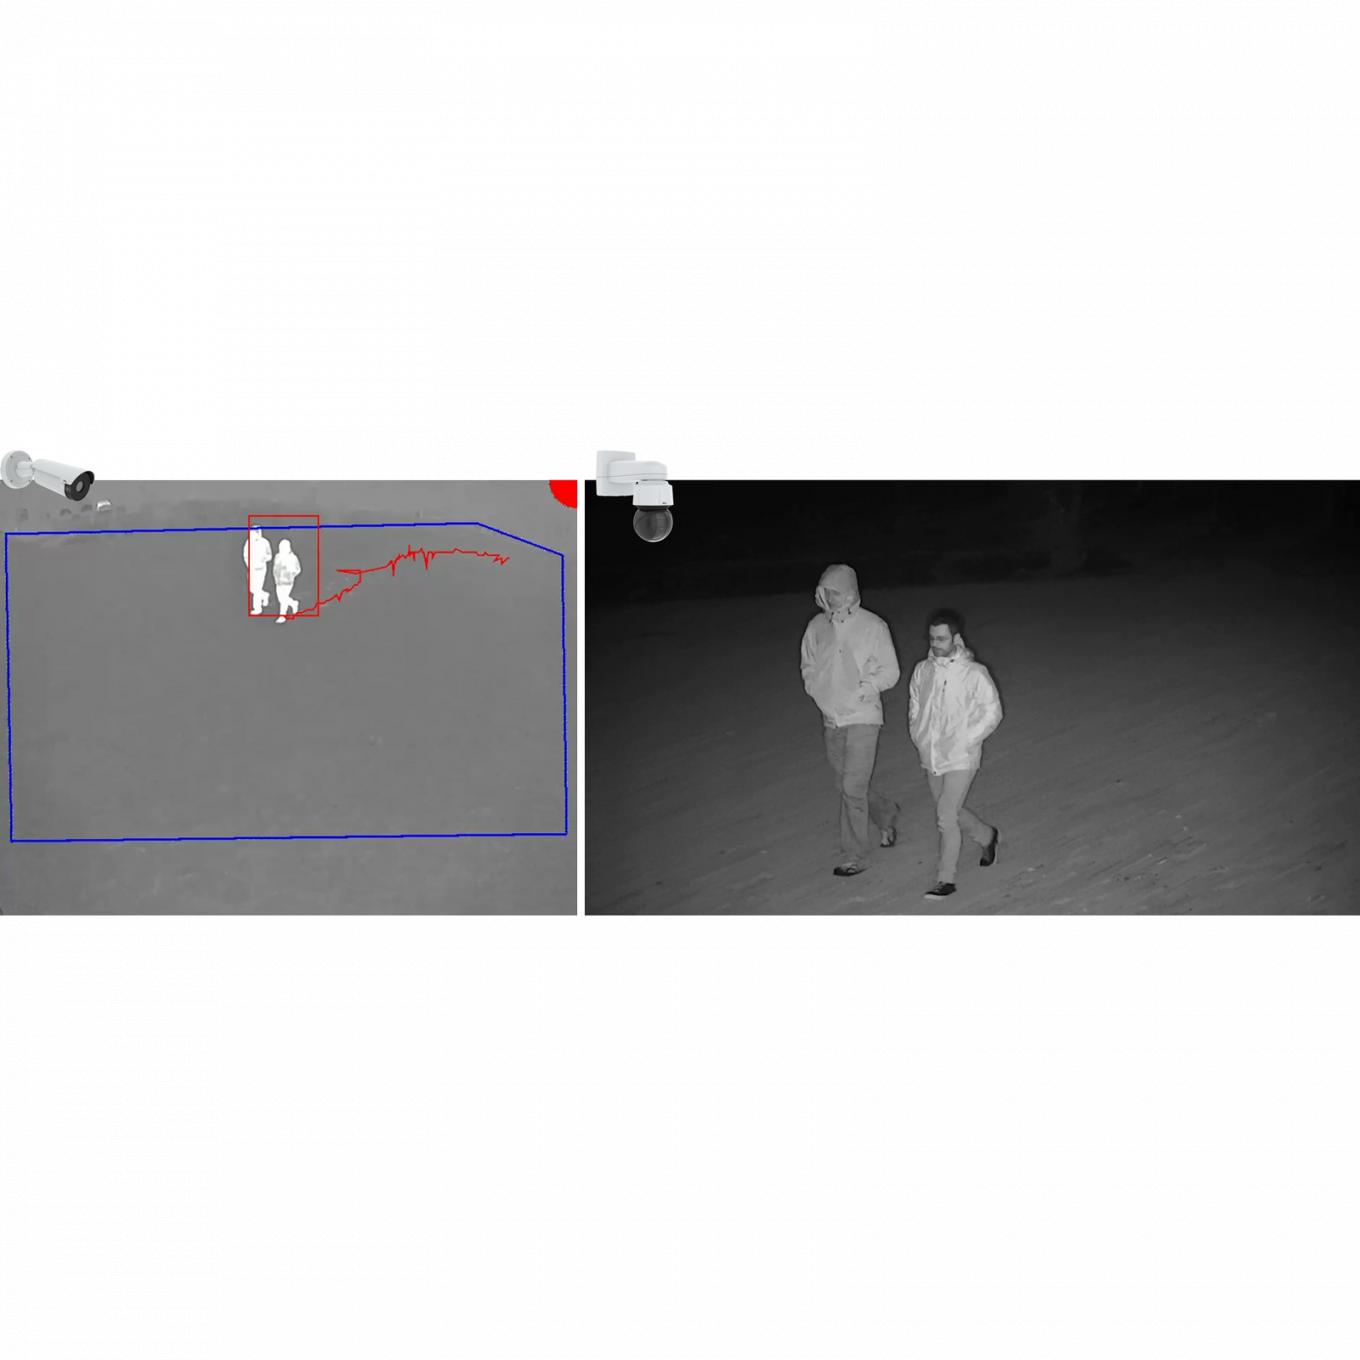 AXIS Perimeter Defender PTZ Autotracking, foto em preto e branco de dois homens caminhando